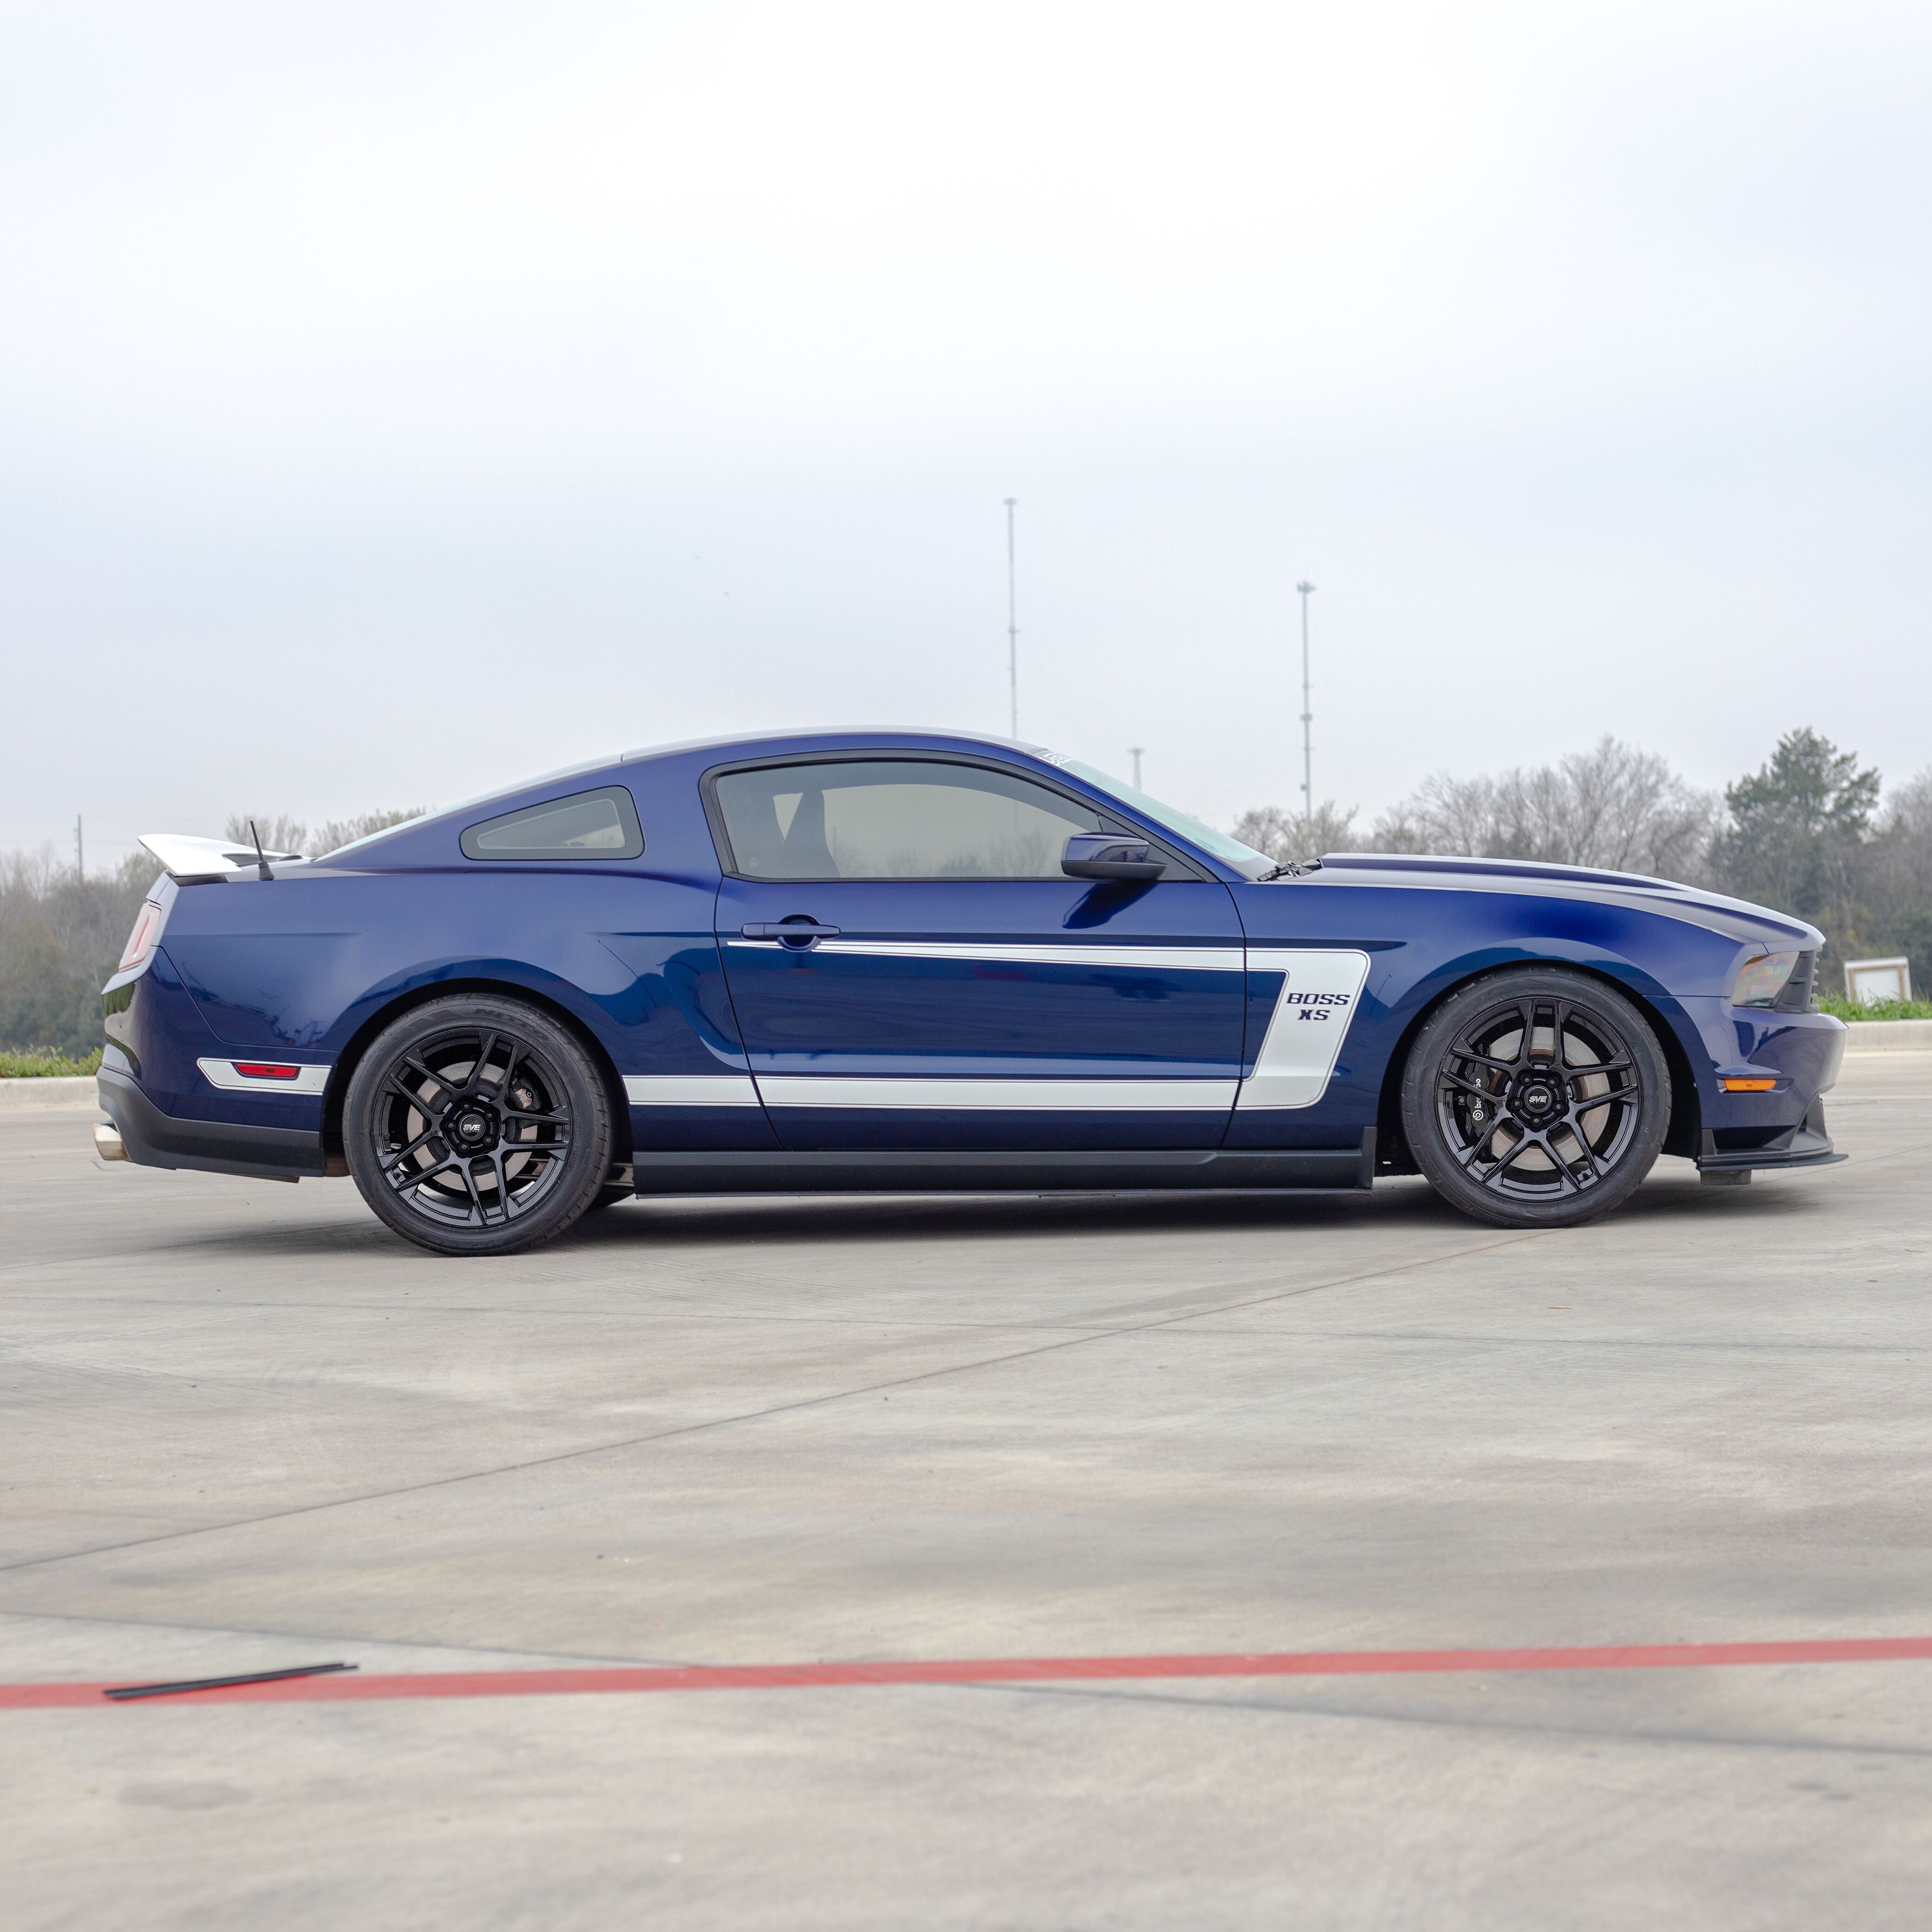 LMR Shop Car Build - 2011 Blue Mustang GT - LMR Shop Car Build - 2011 Blue Mustang GT